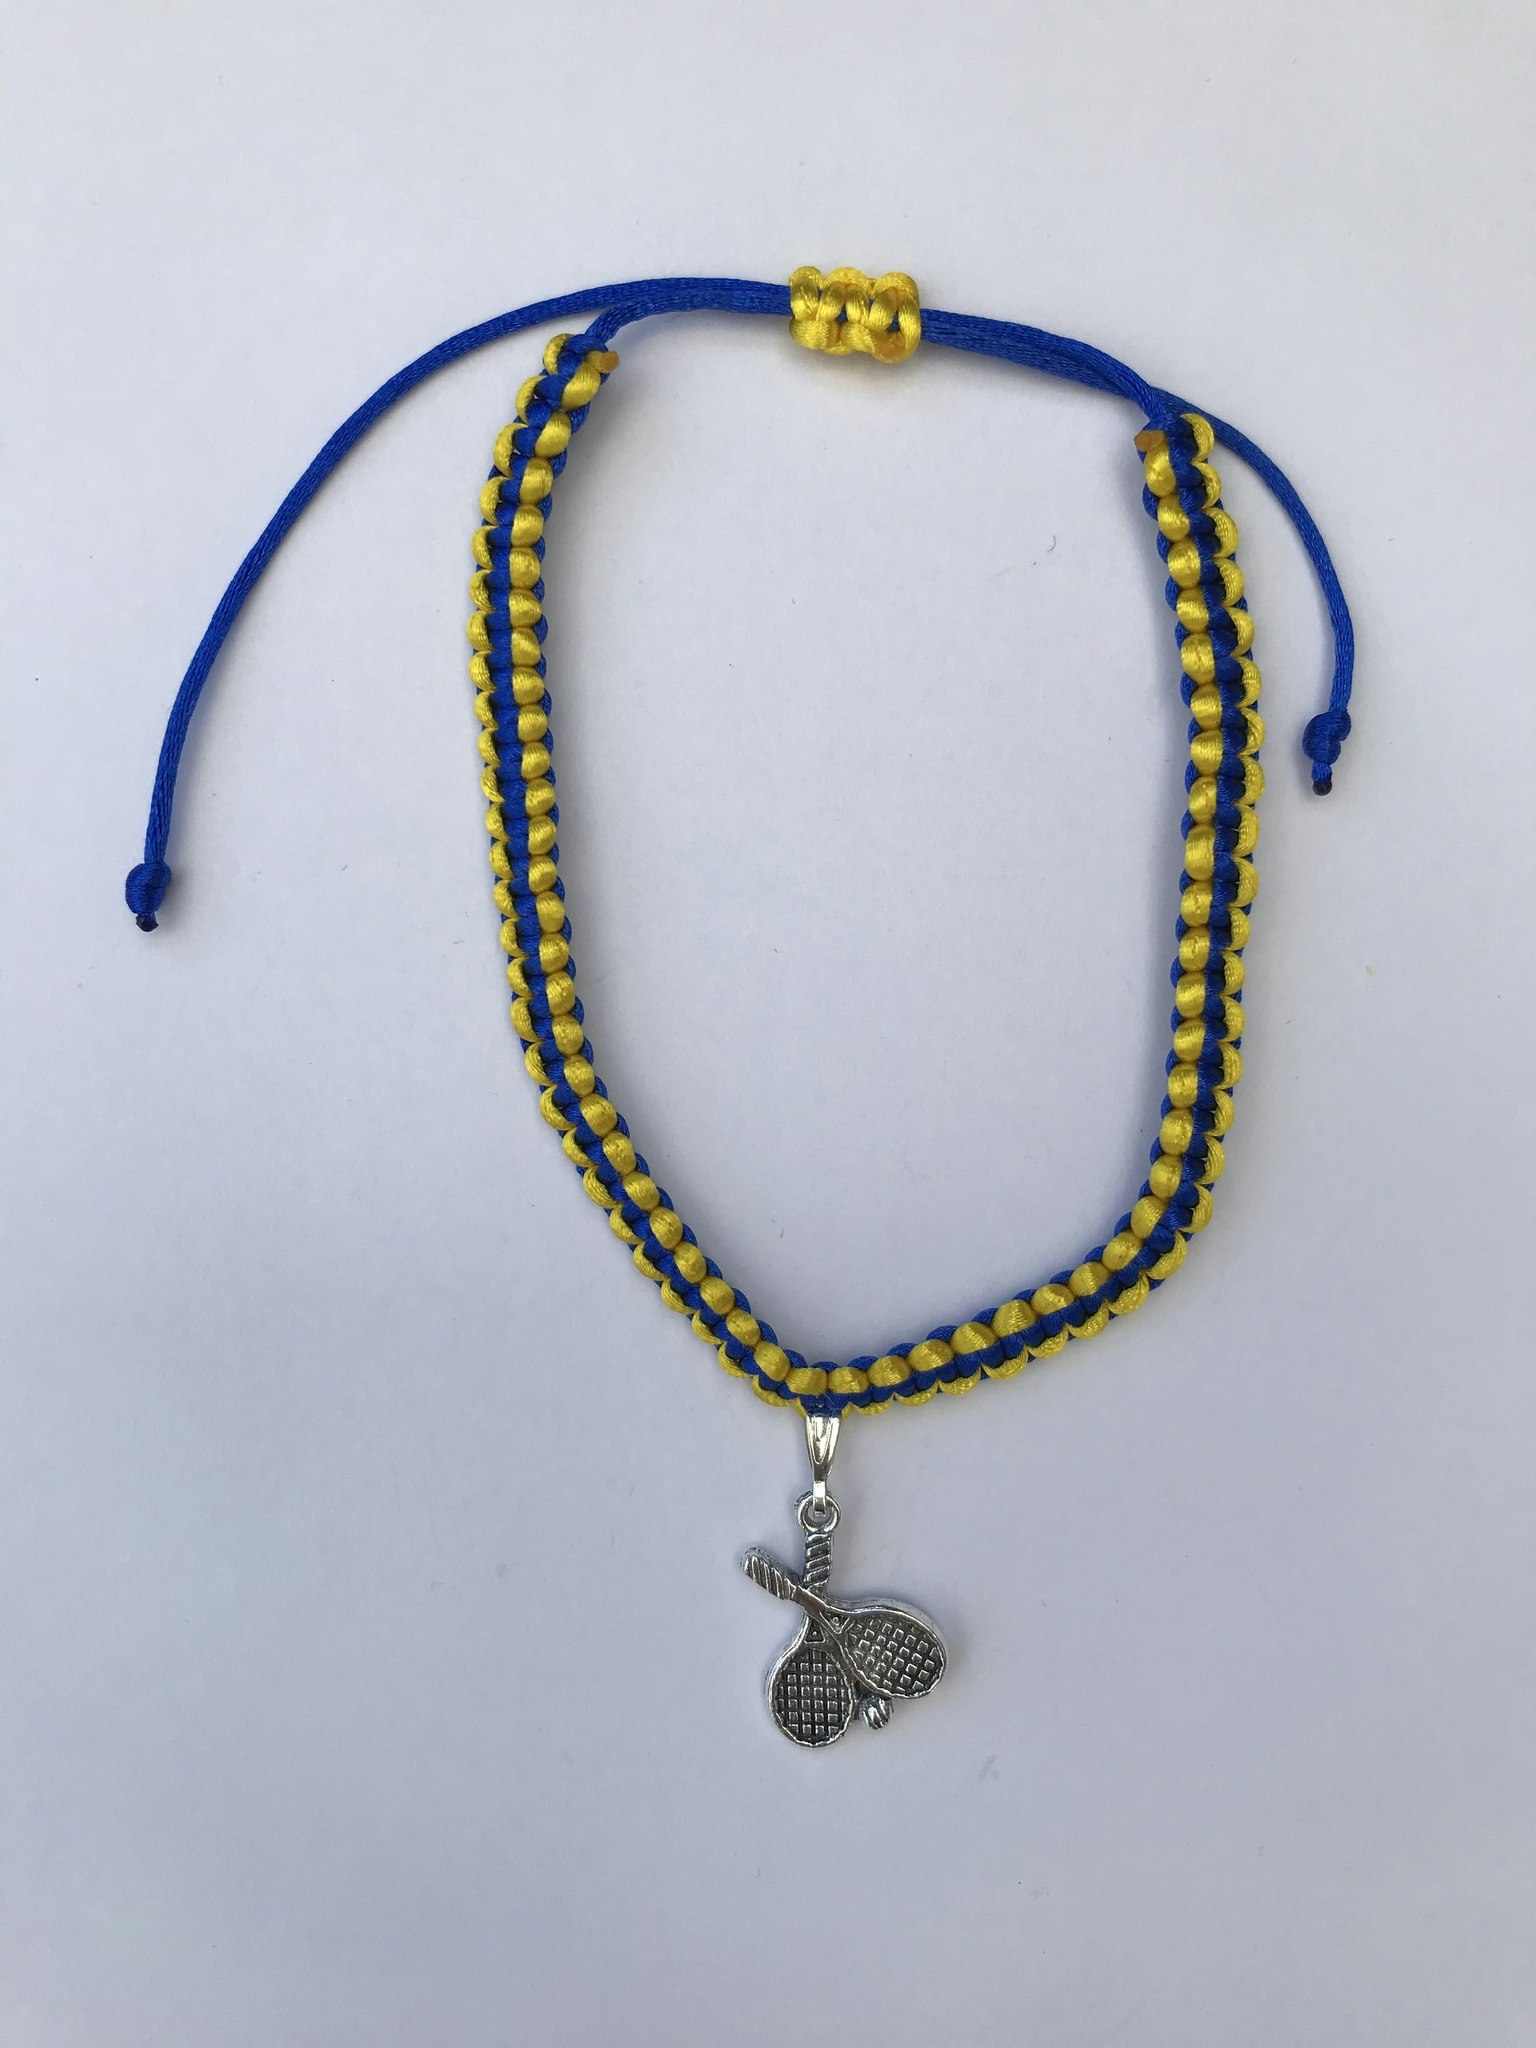 Makraméarmband i blått och gult med padel berlock i antikfärgat silver